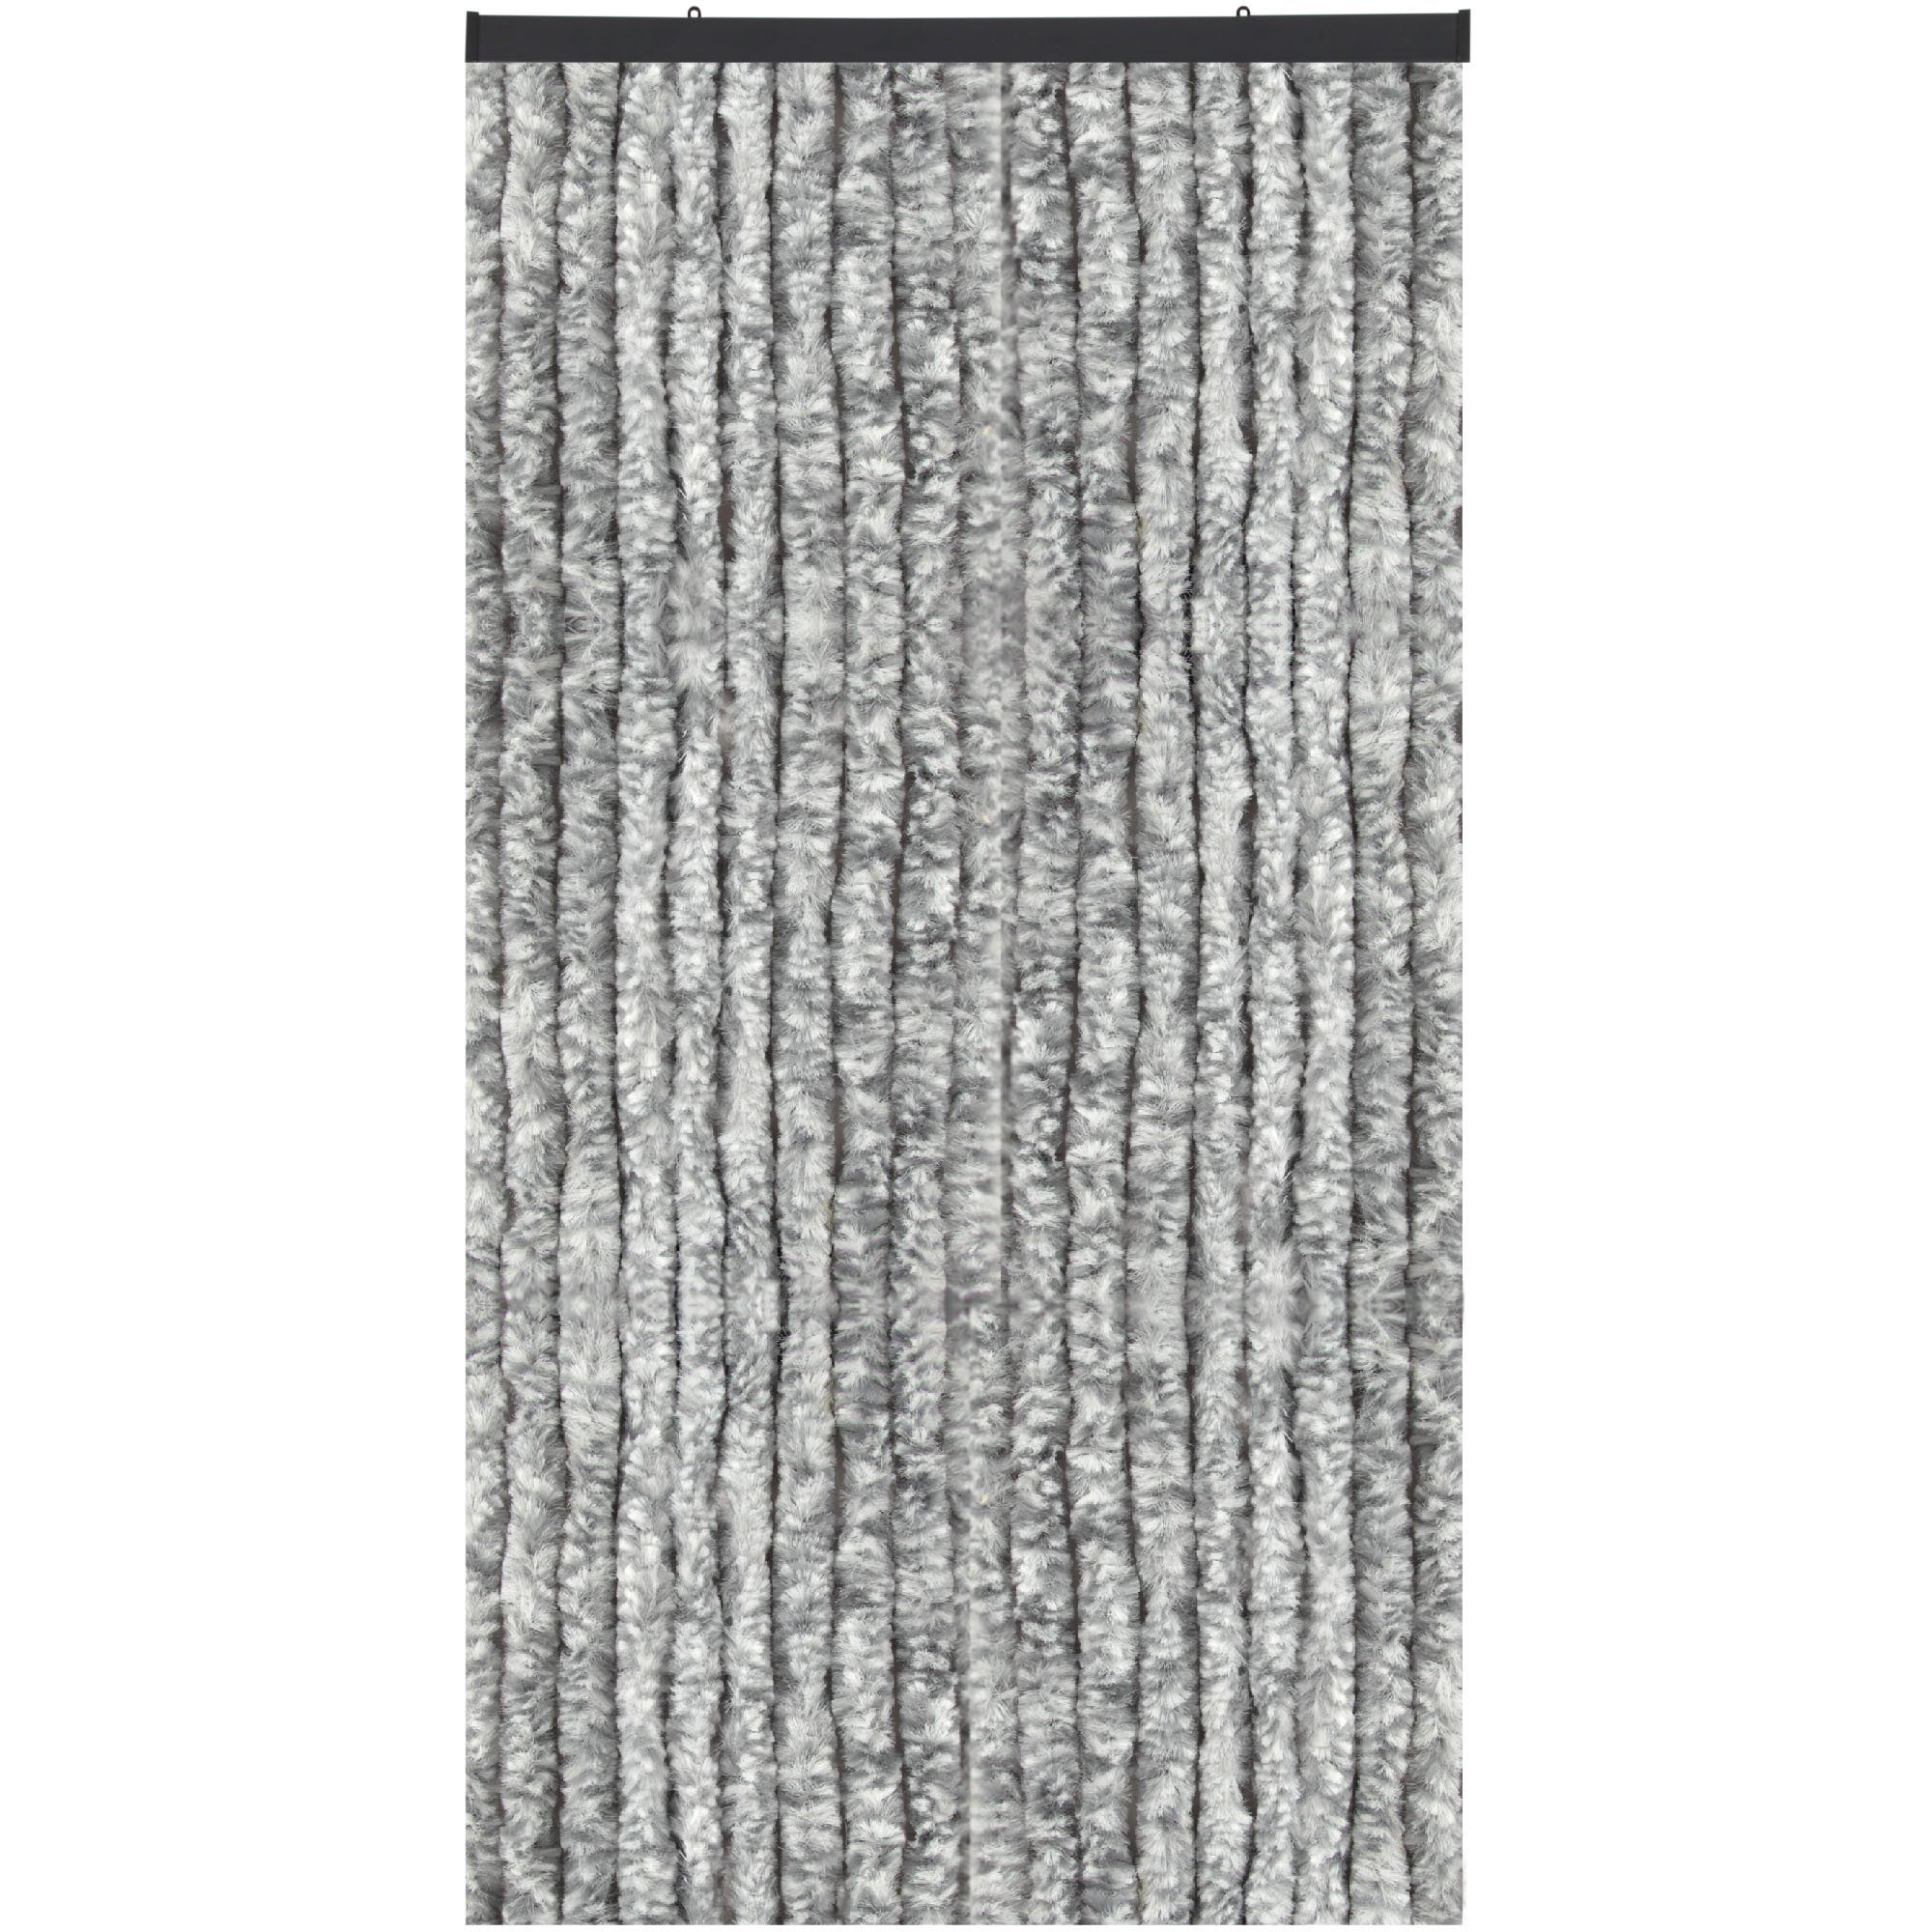 Türvorhang Flauschi, Arsvita, Ösen (1 St), Flauschvorhang 160x185 cm in Meliert hellgrau - weiß, viele Farben Meliert Hellgrau/Weiß